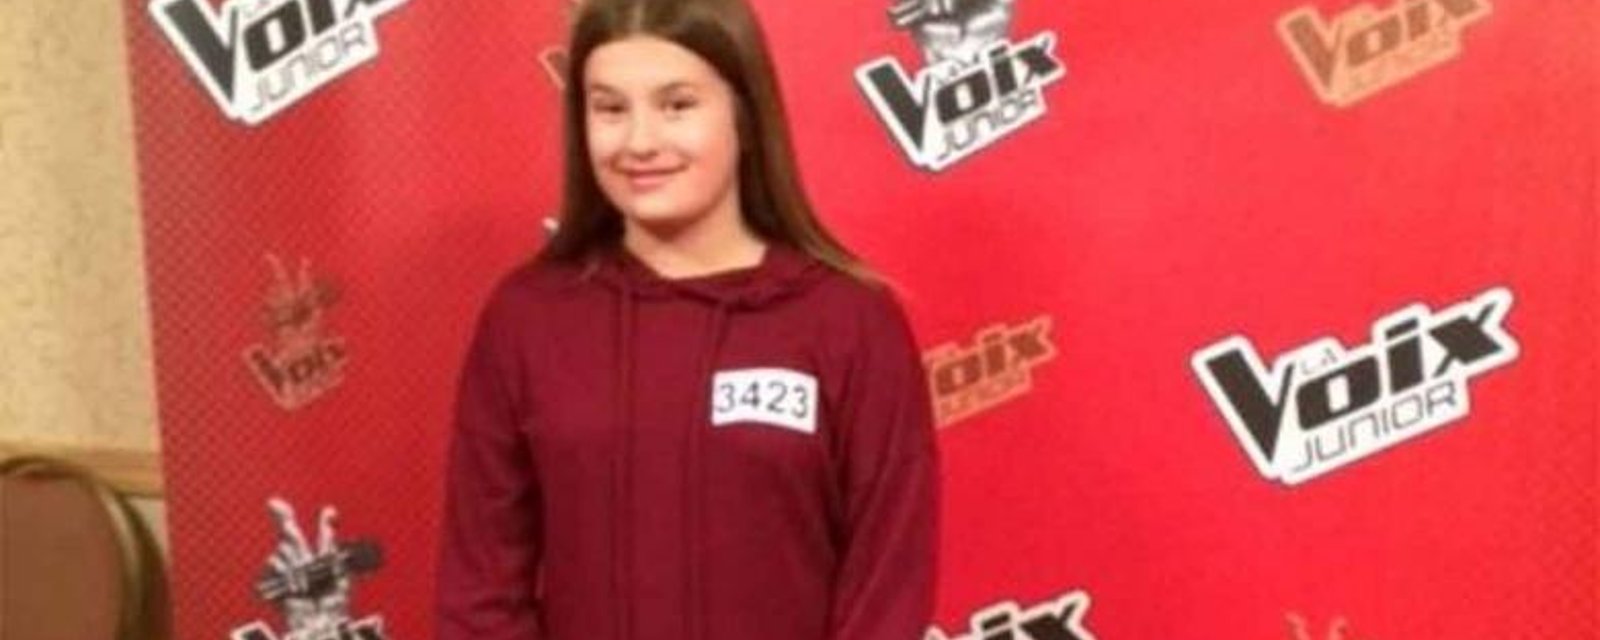 PHOTOS - La fille de Martin Deschamps a passé une audition à La Voix Junior